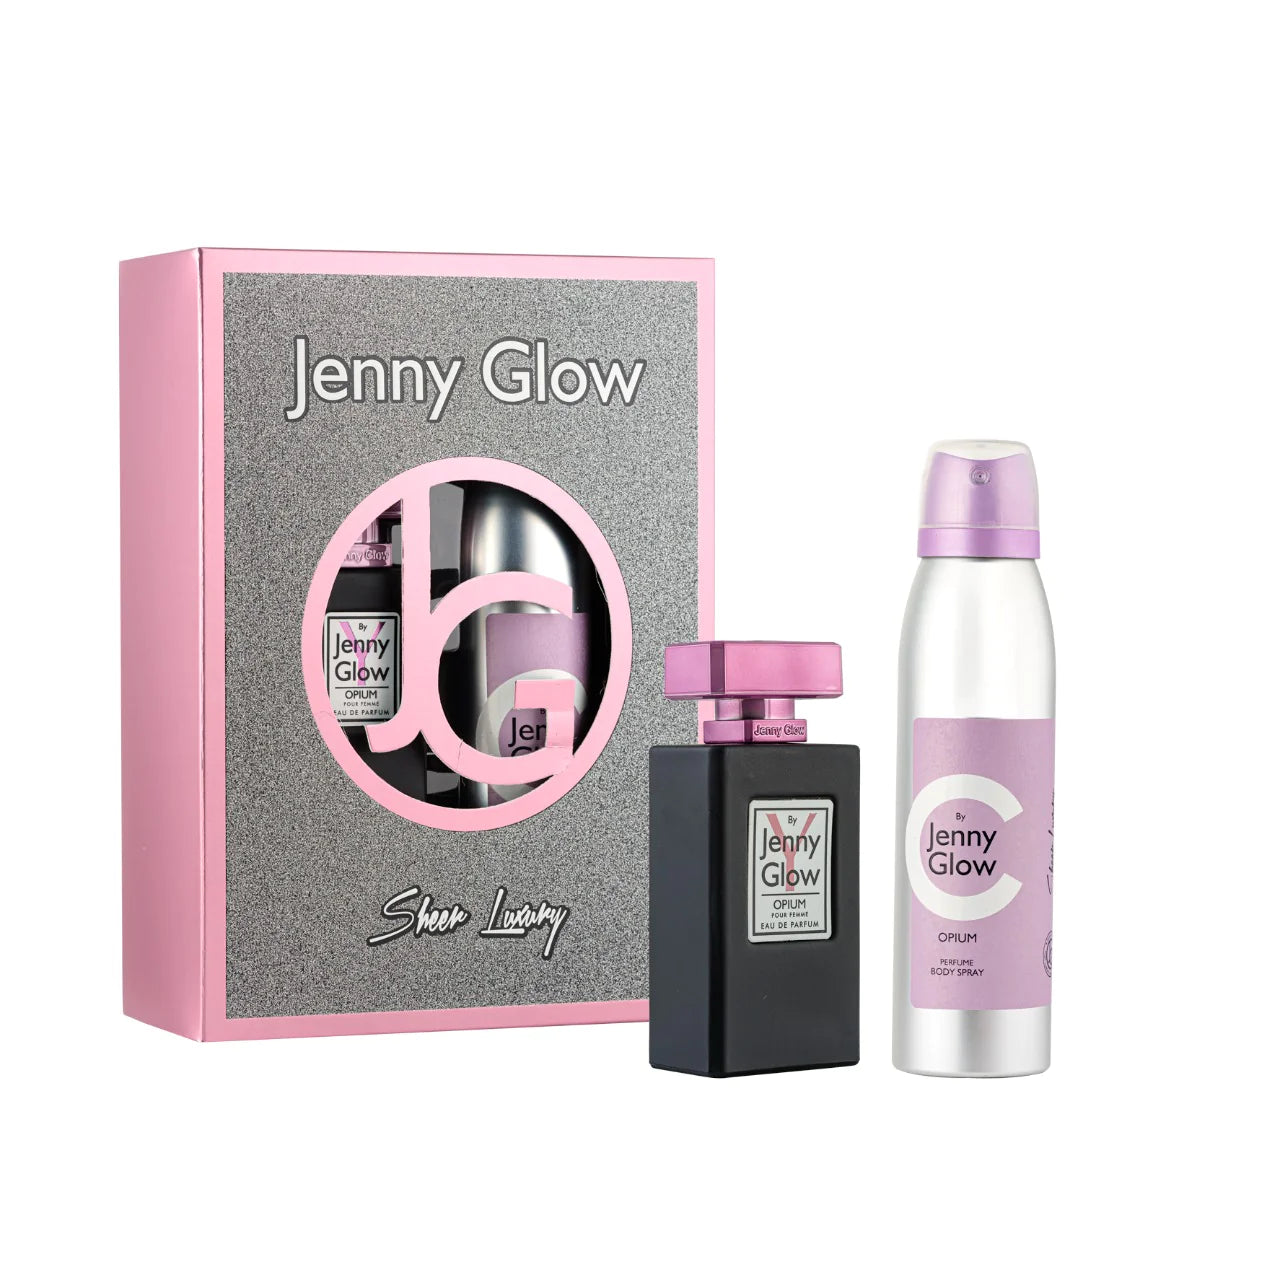 Jenny Glow Perfume & Body Spray Gift Set - Opium